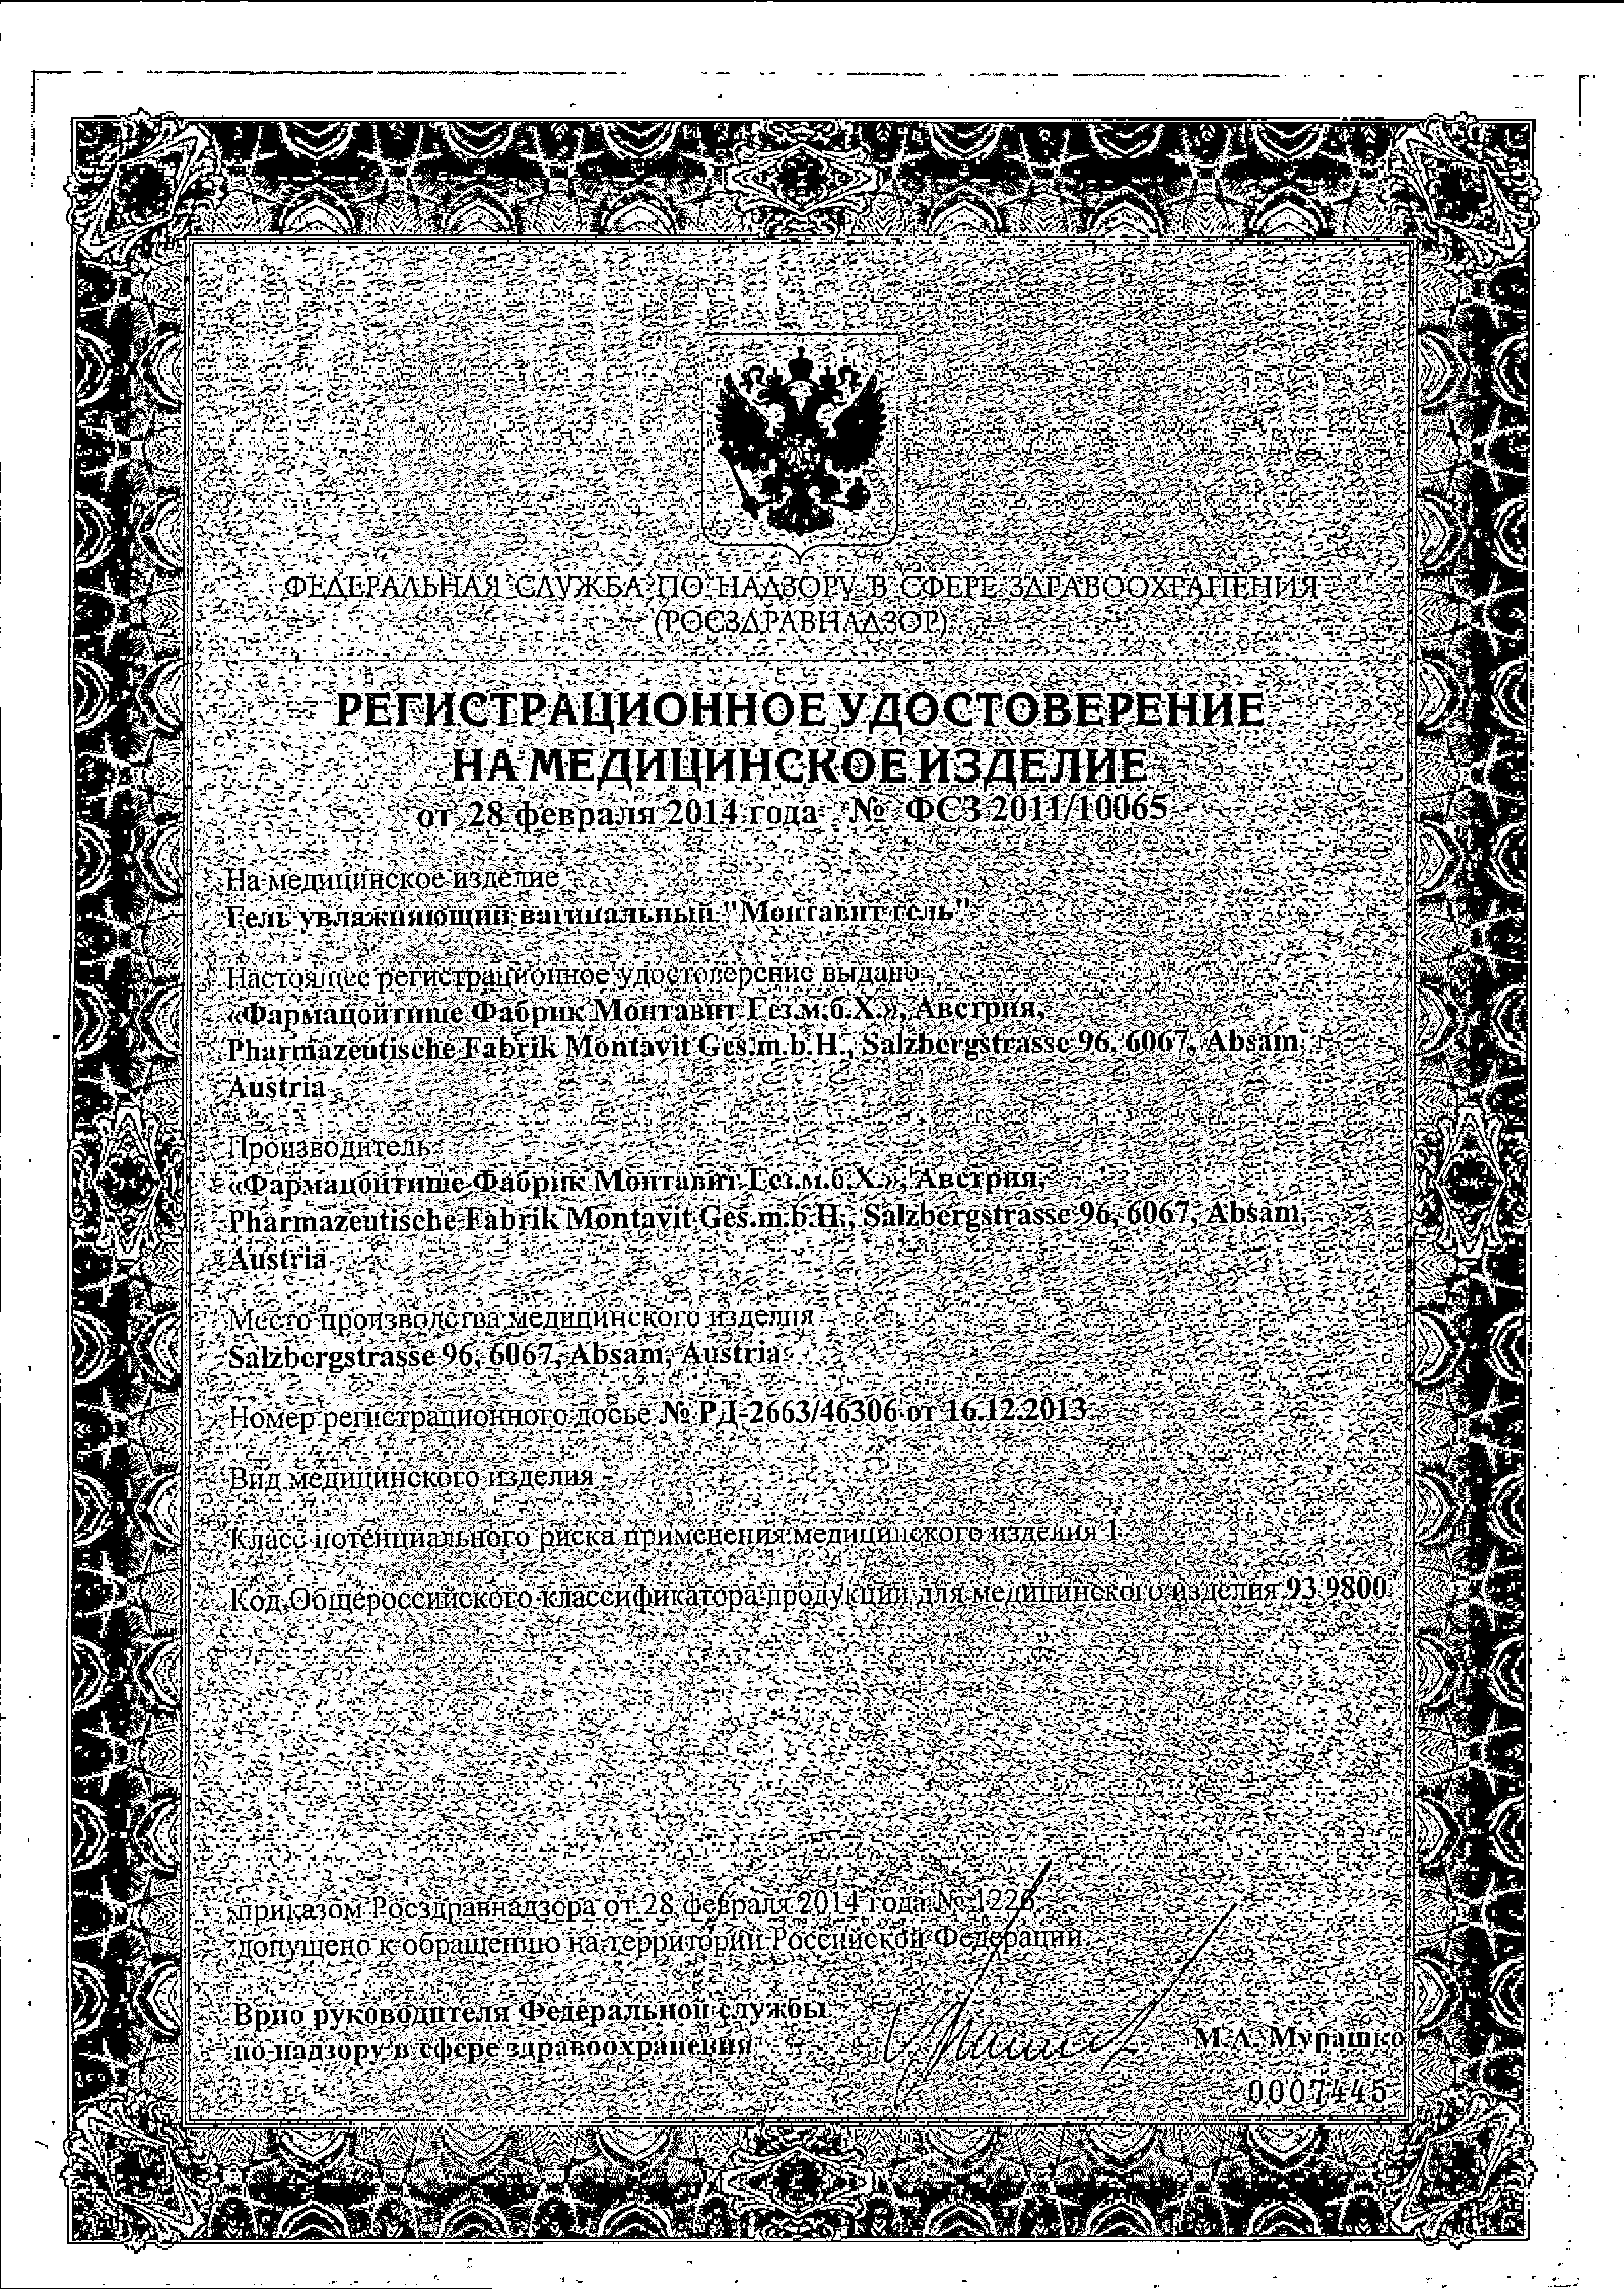 Монтавит гель сертификат